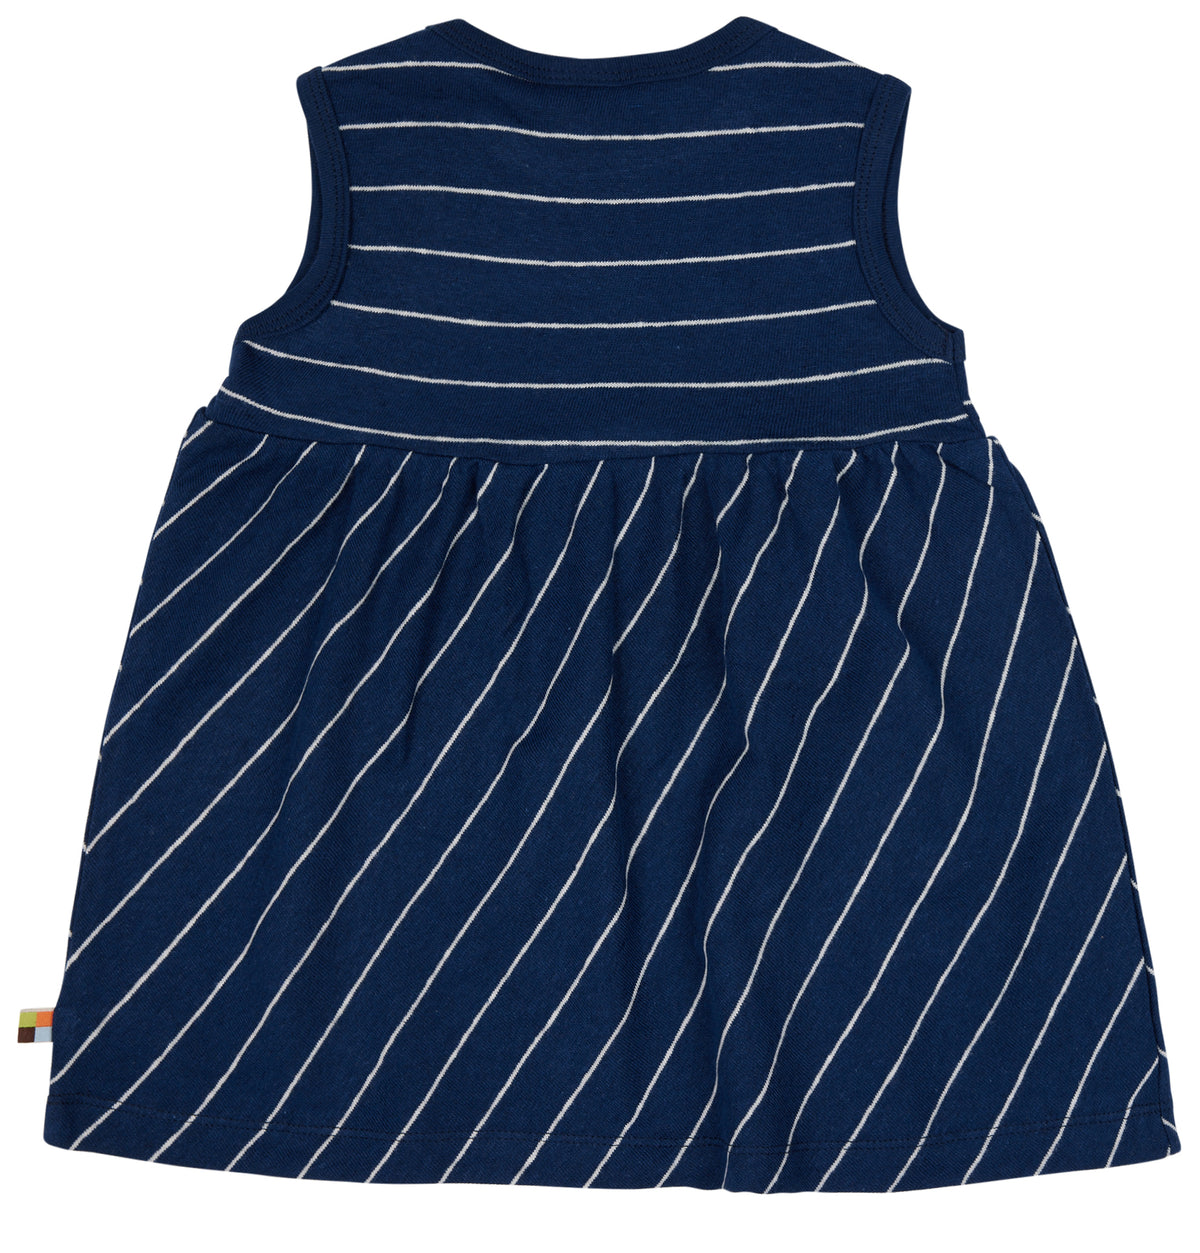 Kleid mit Baumwolle/ Leinen in dunkelblau( 5 und 7 Jahre)  von loud+proud